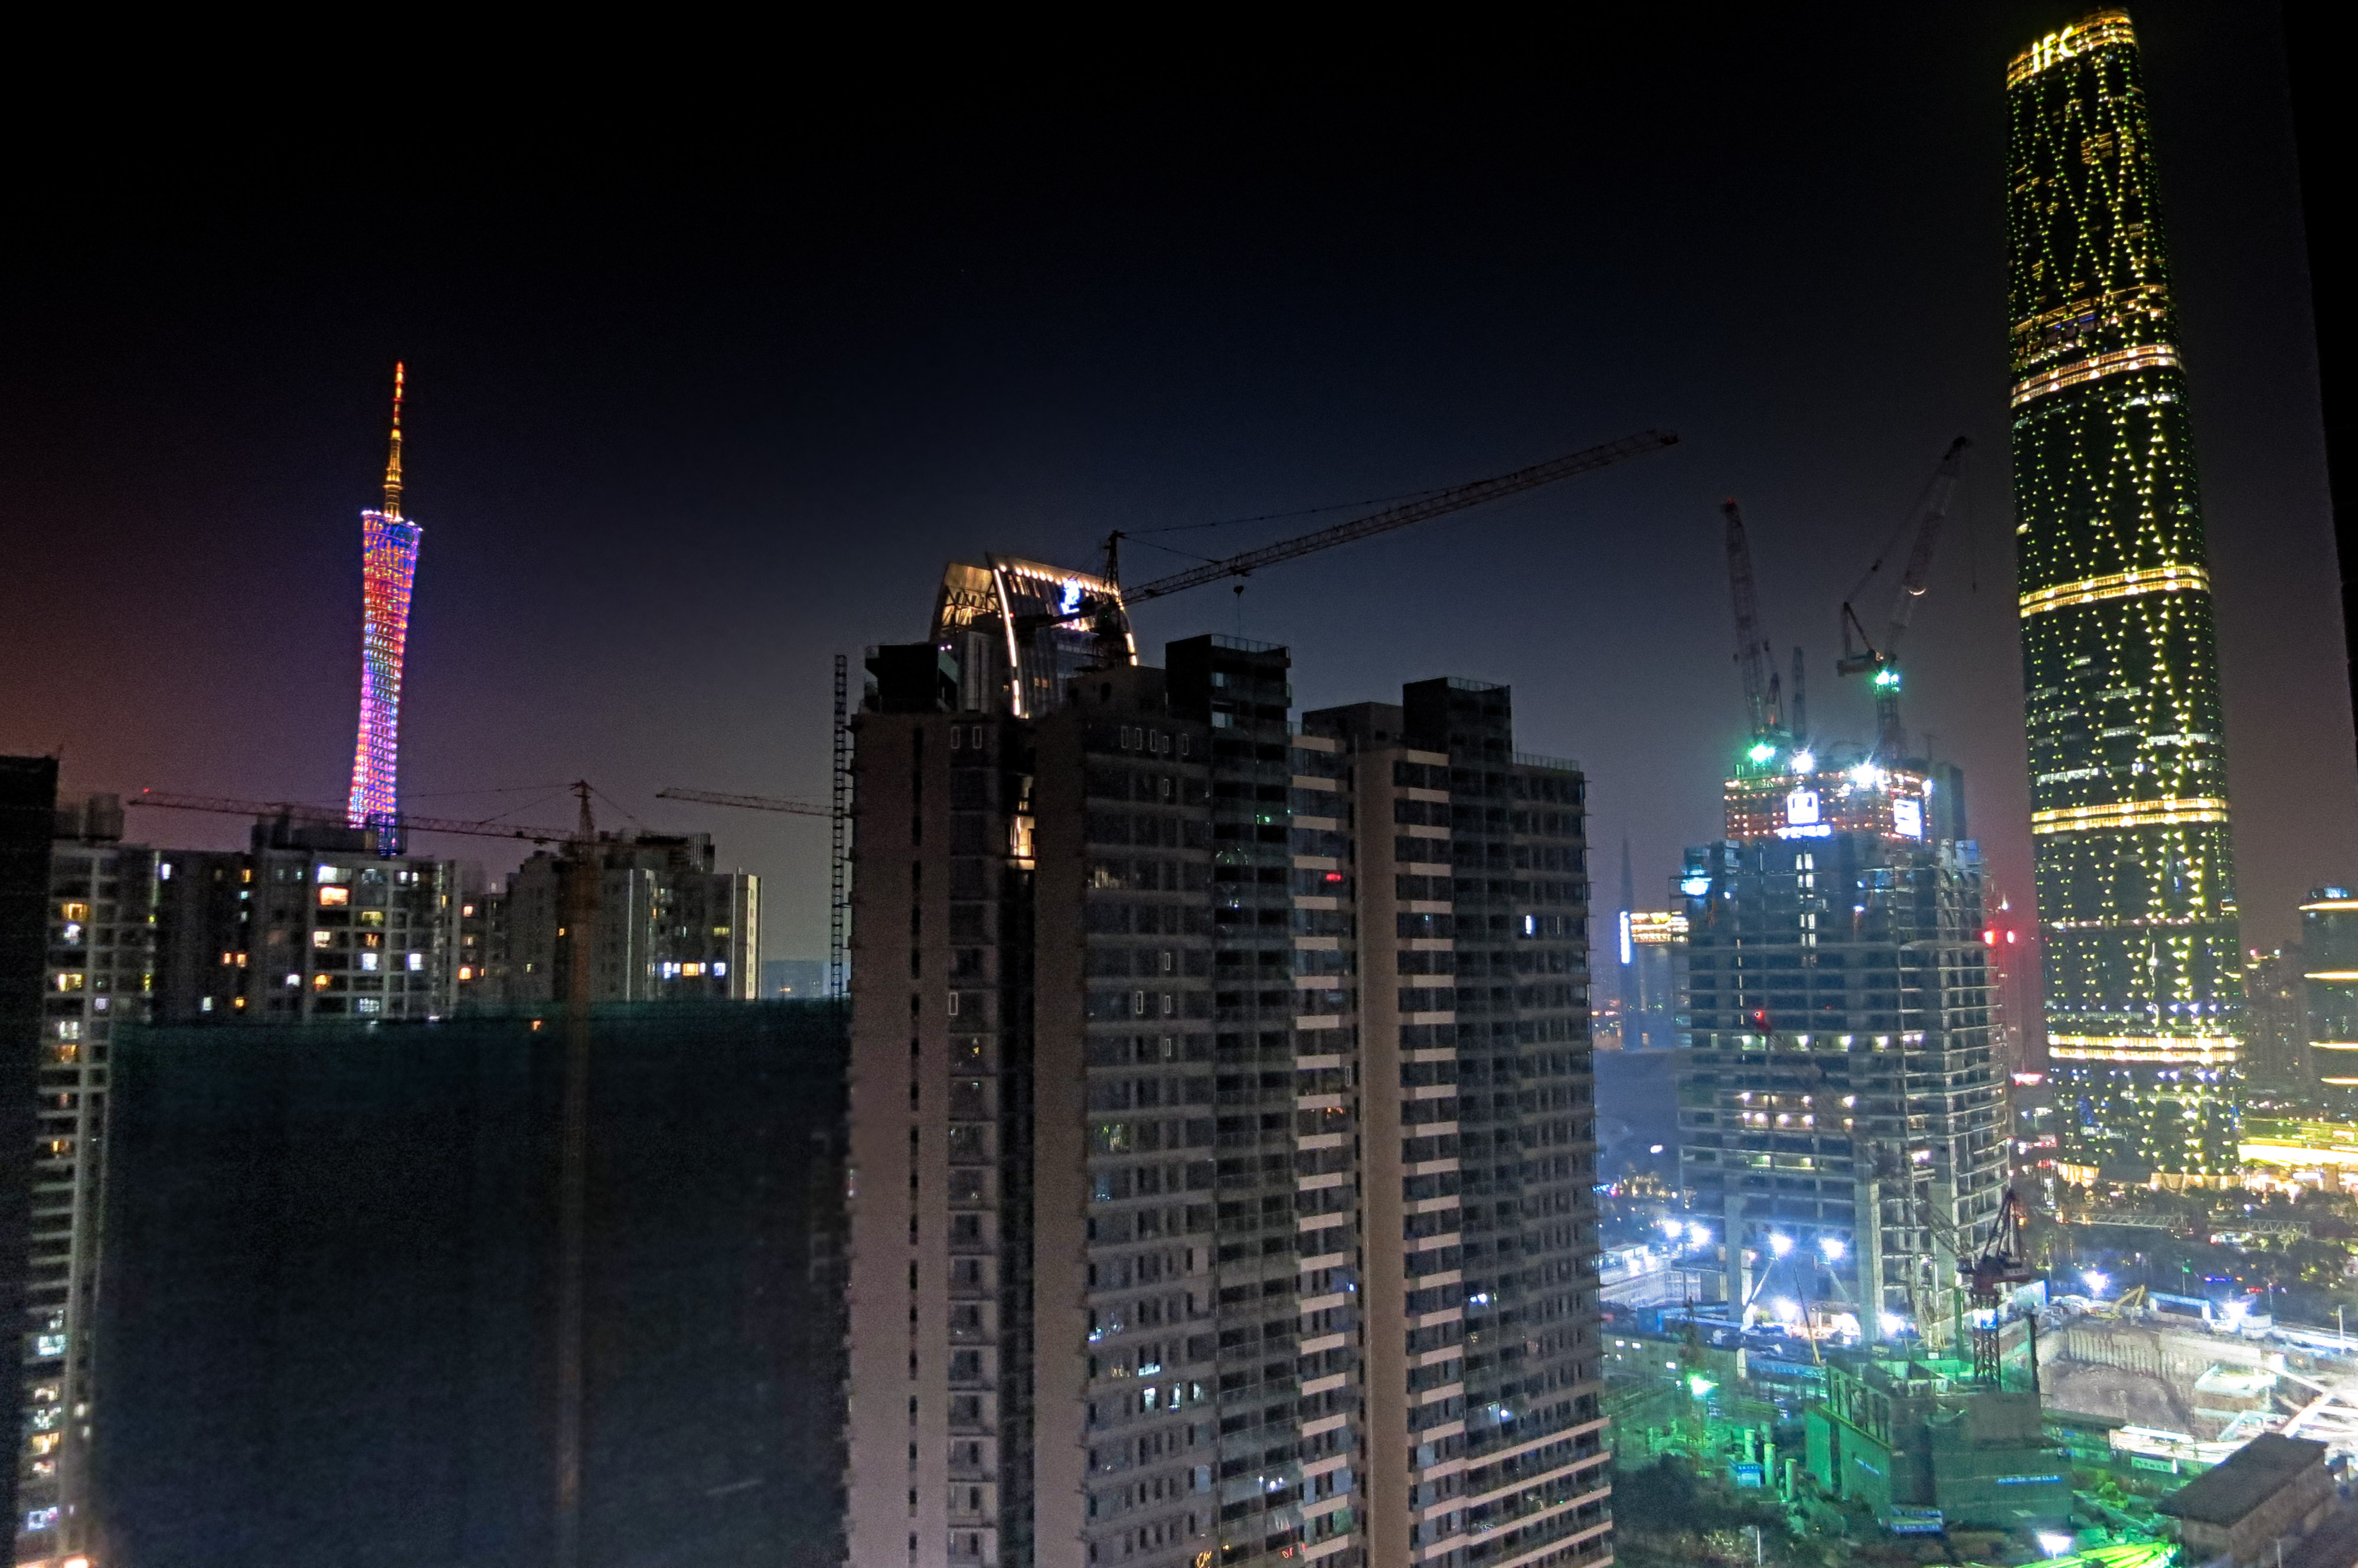 Night shot of Guangzhou, China